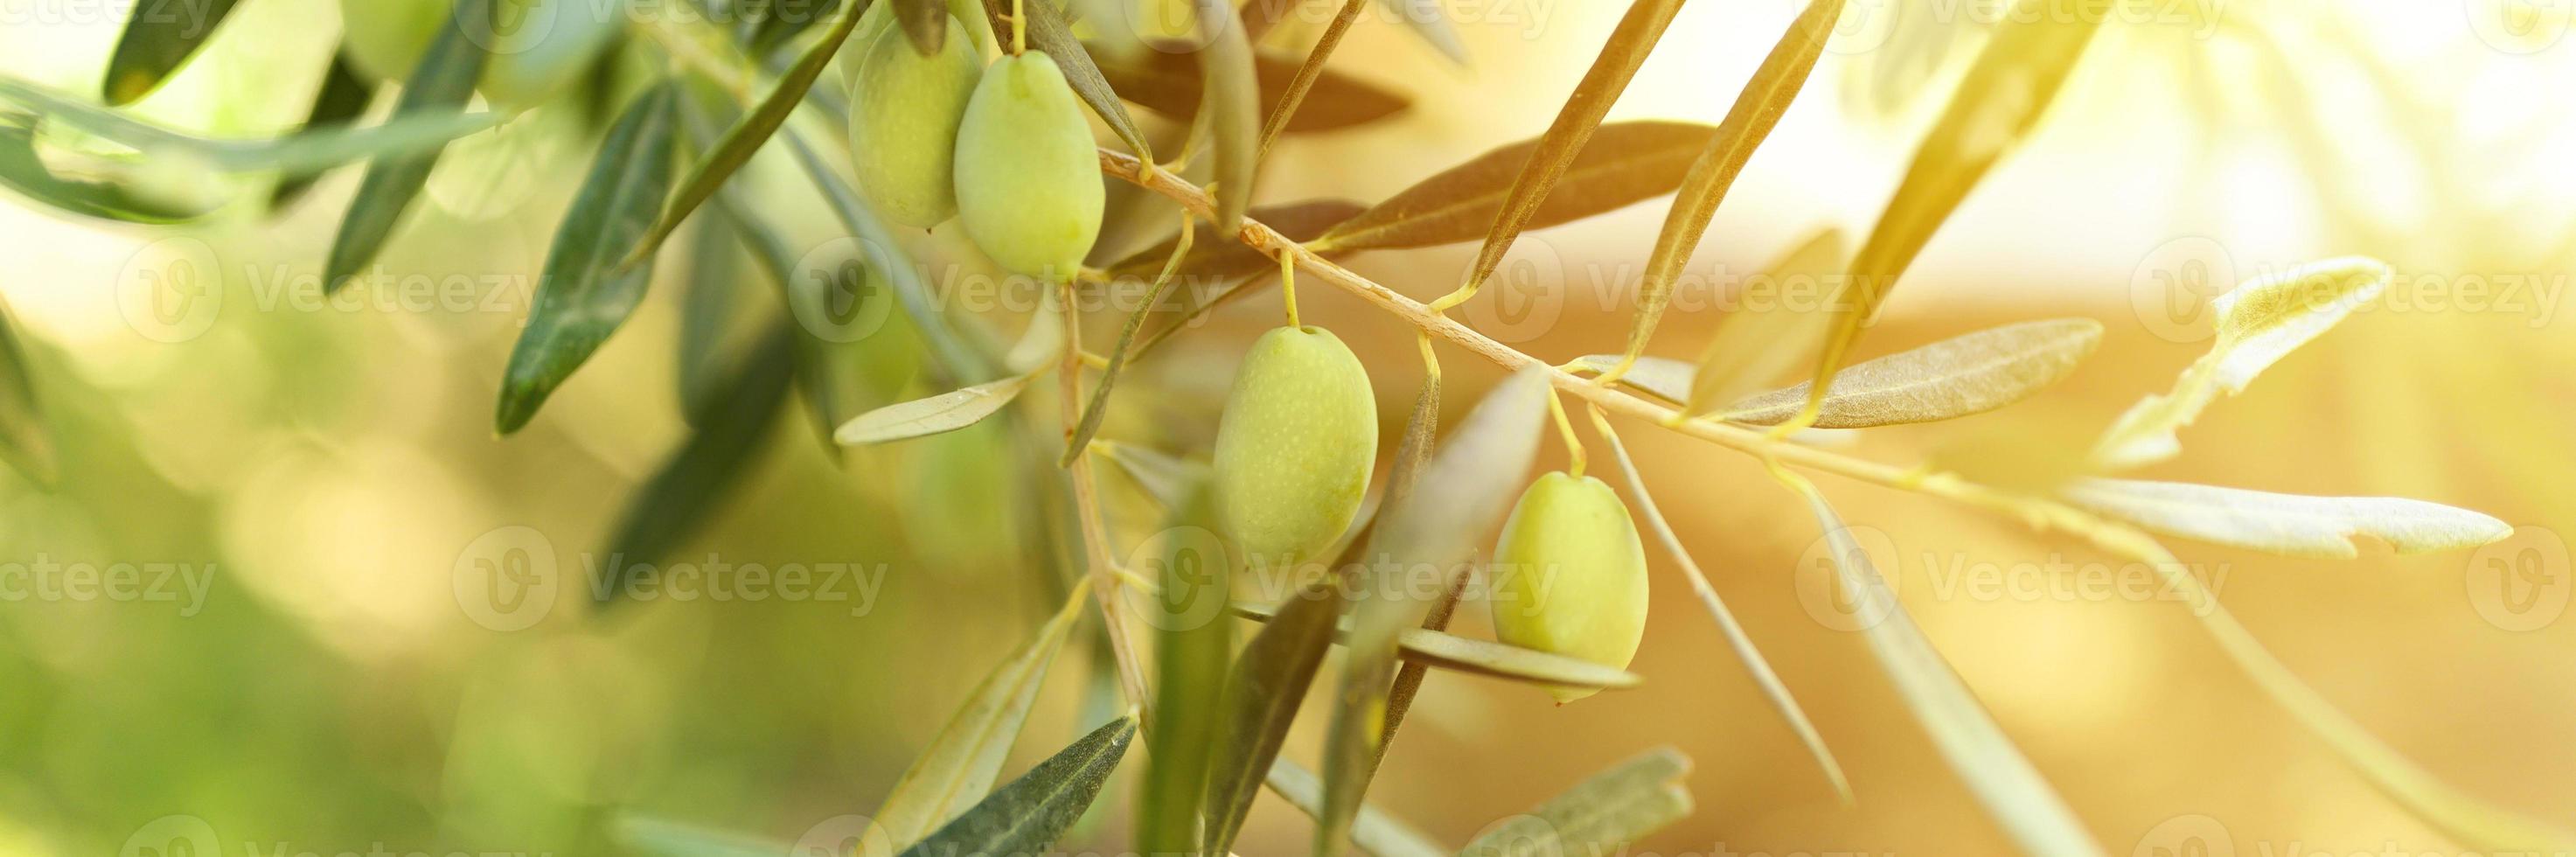 Aceitunas verdes que crecen en una rama de olivo en el jardín foto